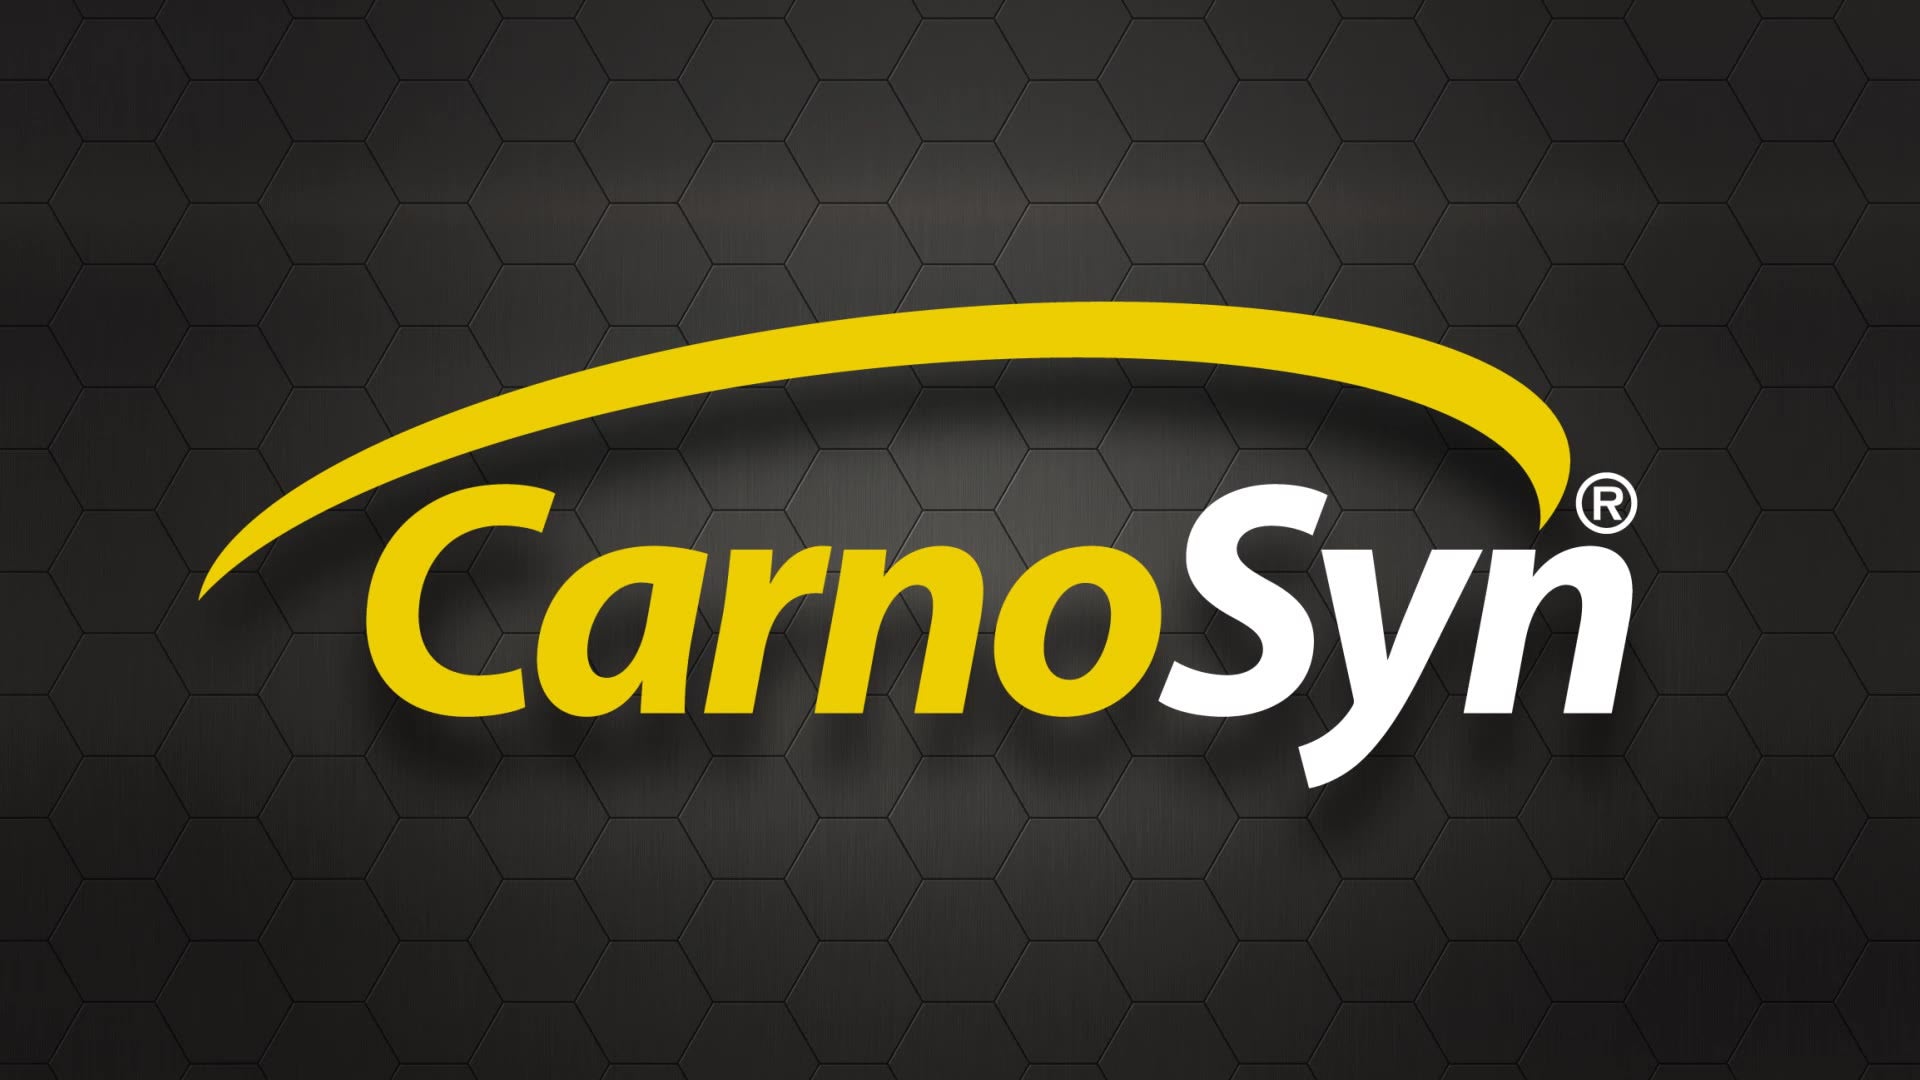 CarnoSyn logo